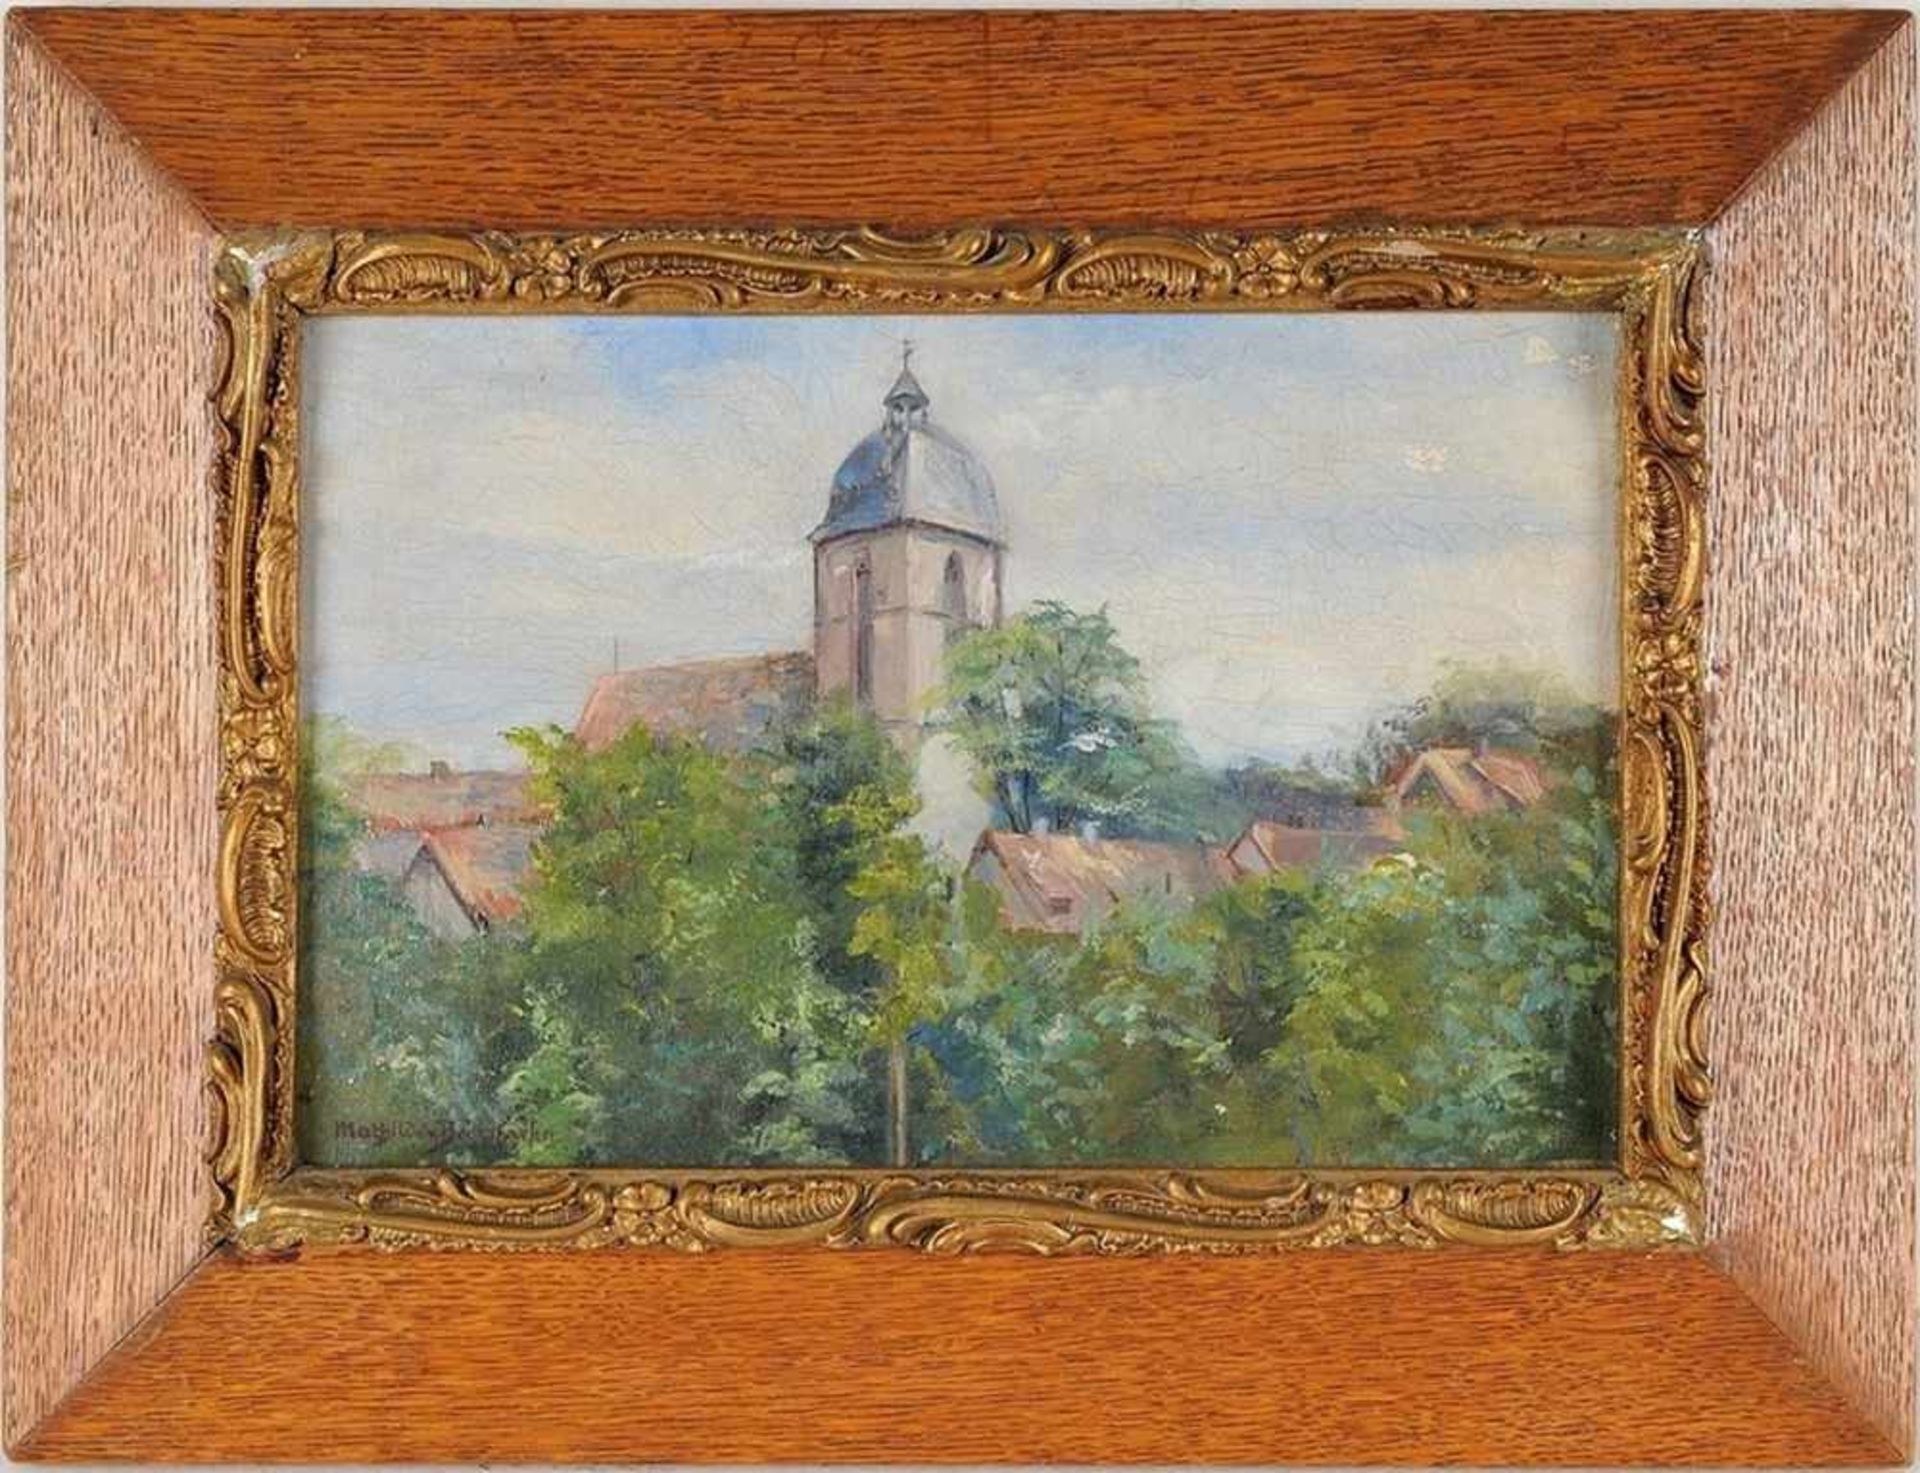 Bodenhausen, Mathilde Freiin von (1870 Göttingen - 1946 München) Öl/Malpappe. Blick auf kleines Dorf